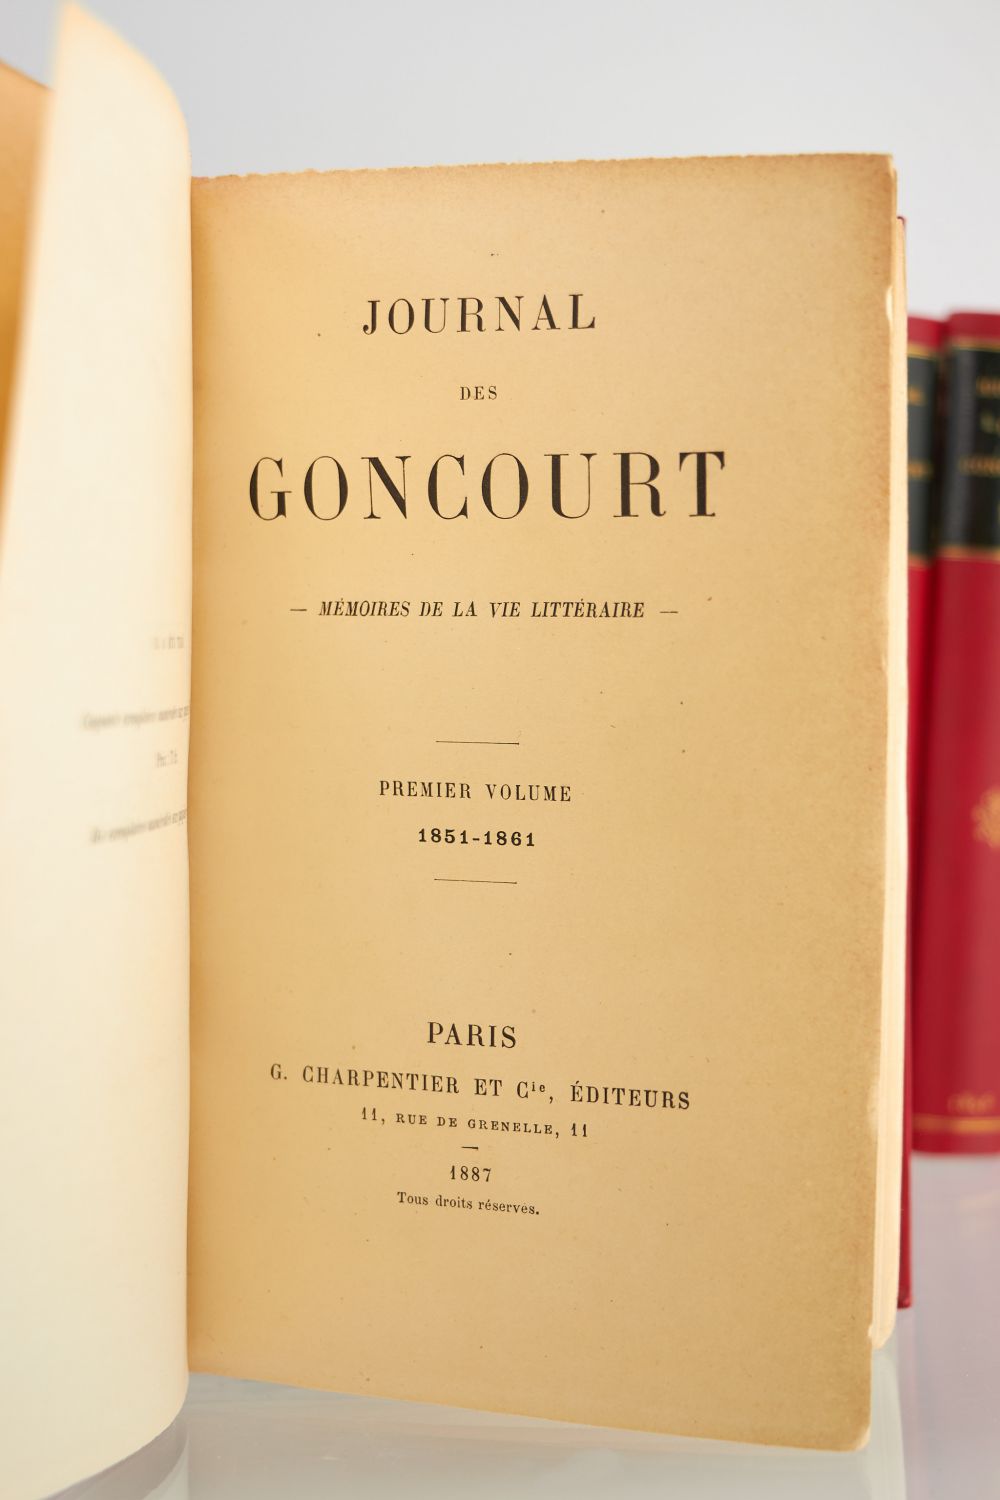 GONCOURT : Journal des Goncourt. Mémoires de la vie